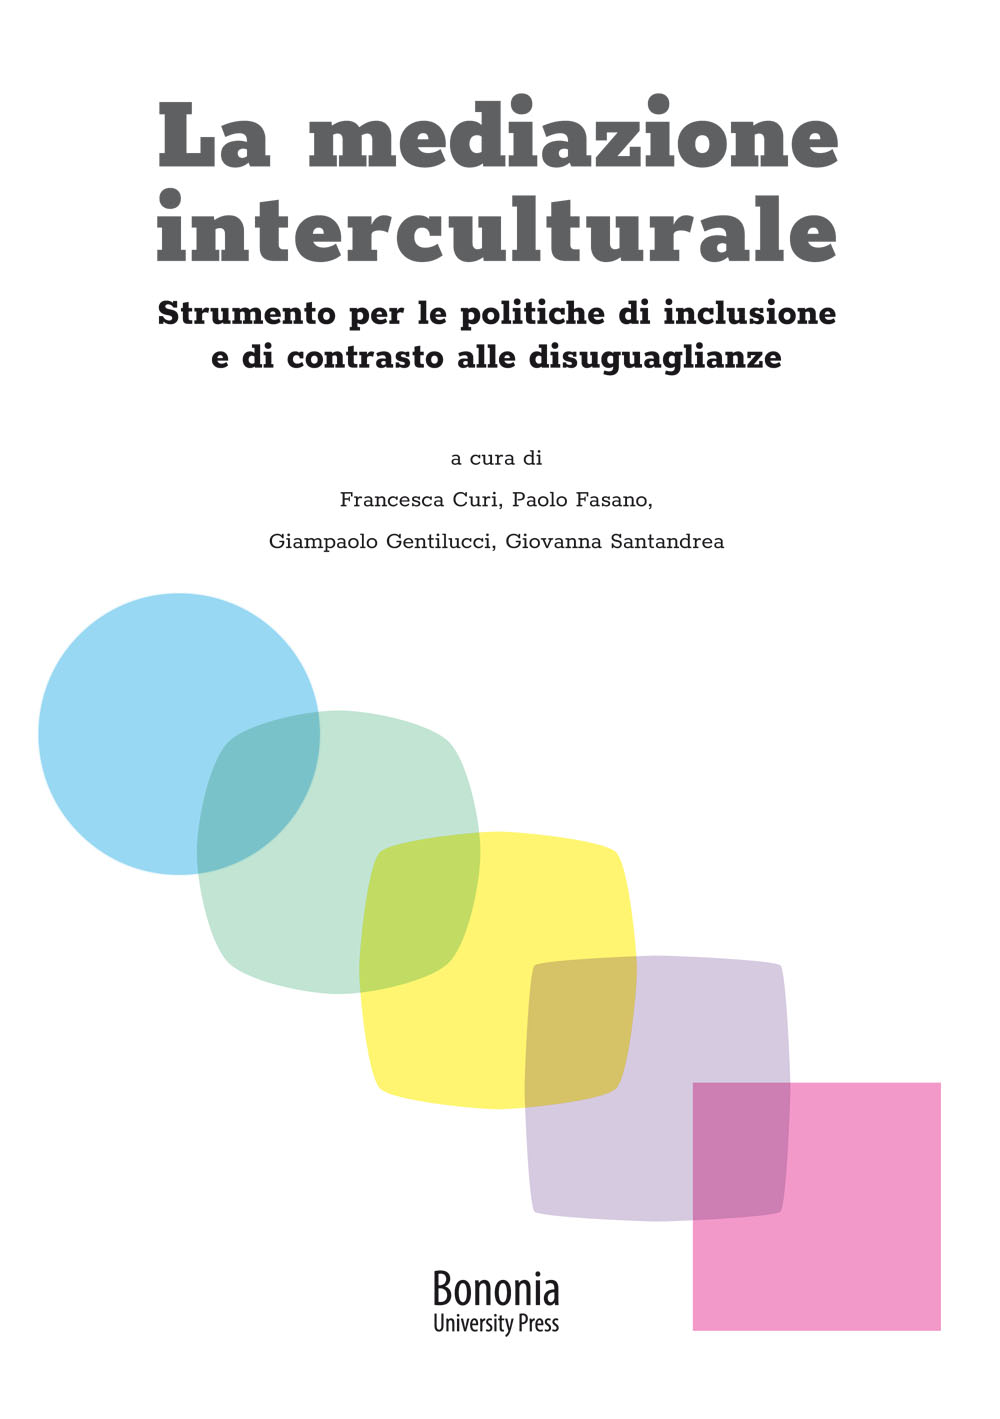 La mediazione interculturale - Bologna University Press